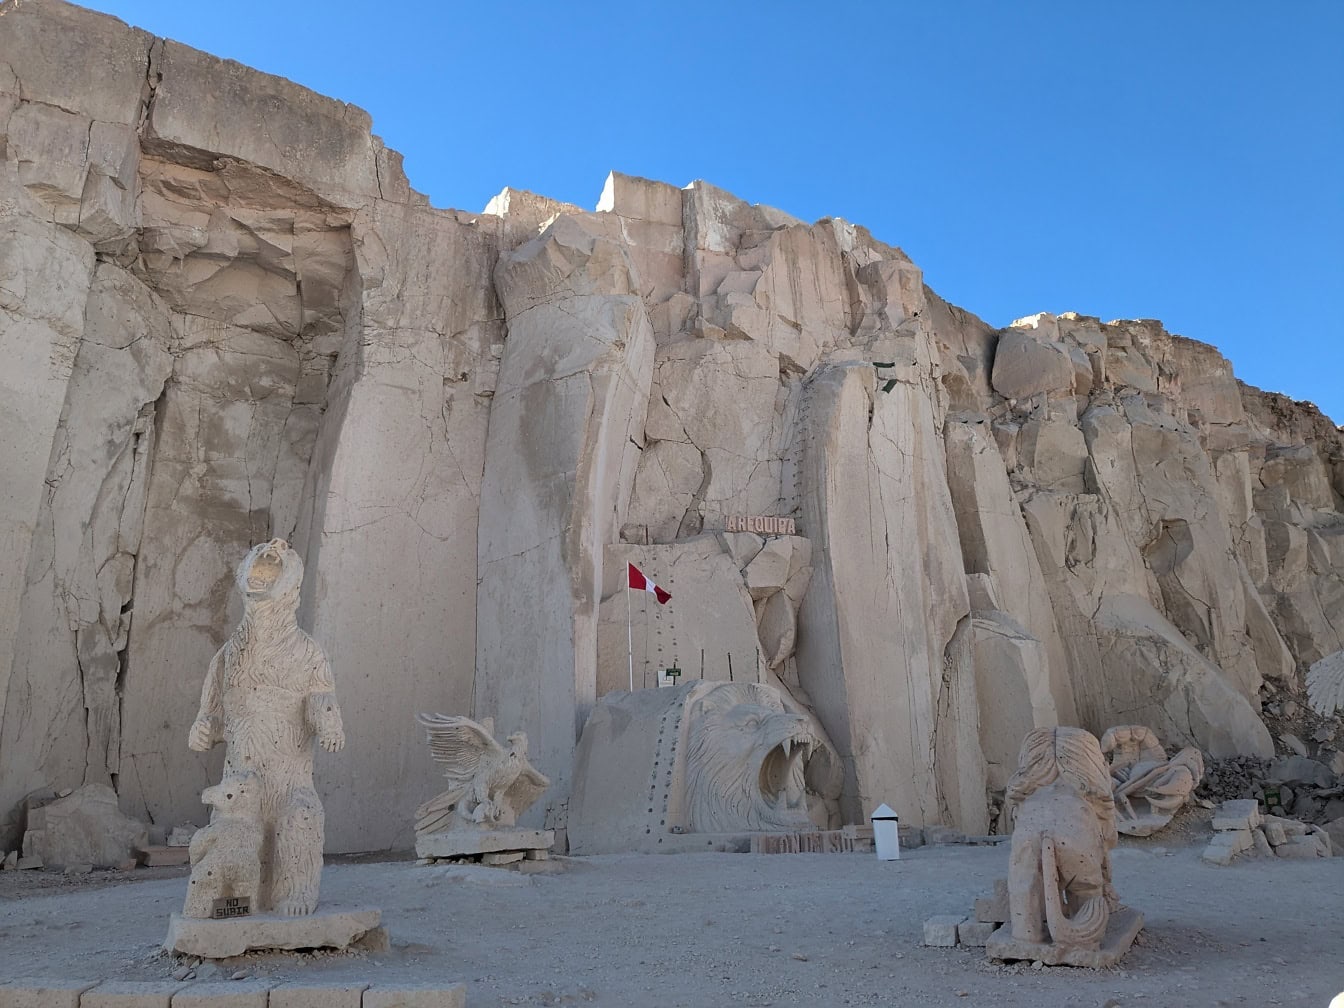 Peru’da ünlü bir turistik cazibe merkezi olan Arequipa’daki Culebrillas kanyonu yakınlarındaki Sillar rotasındaki taş heykeller